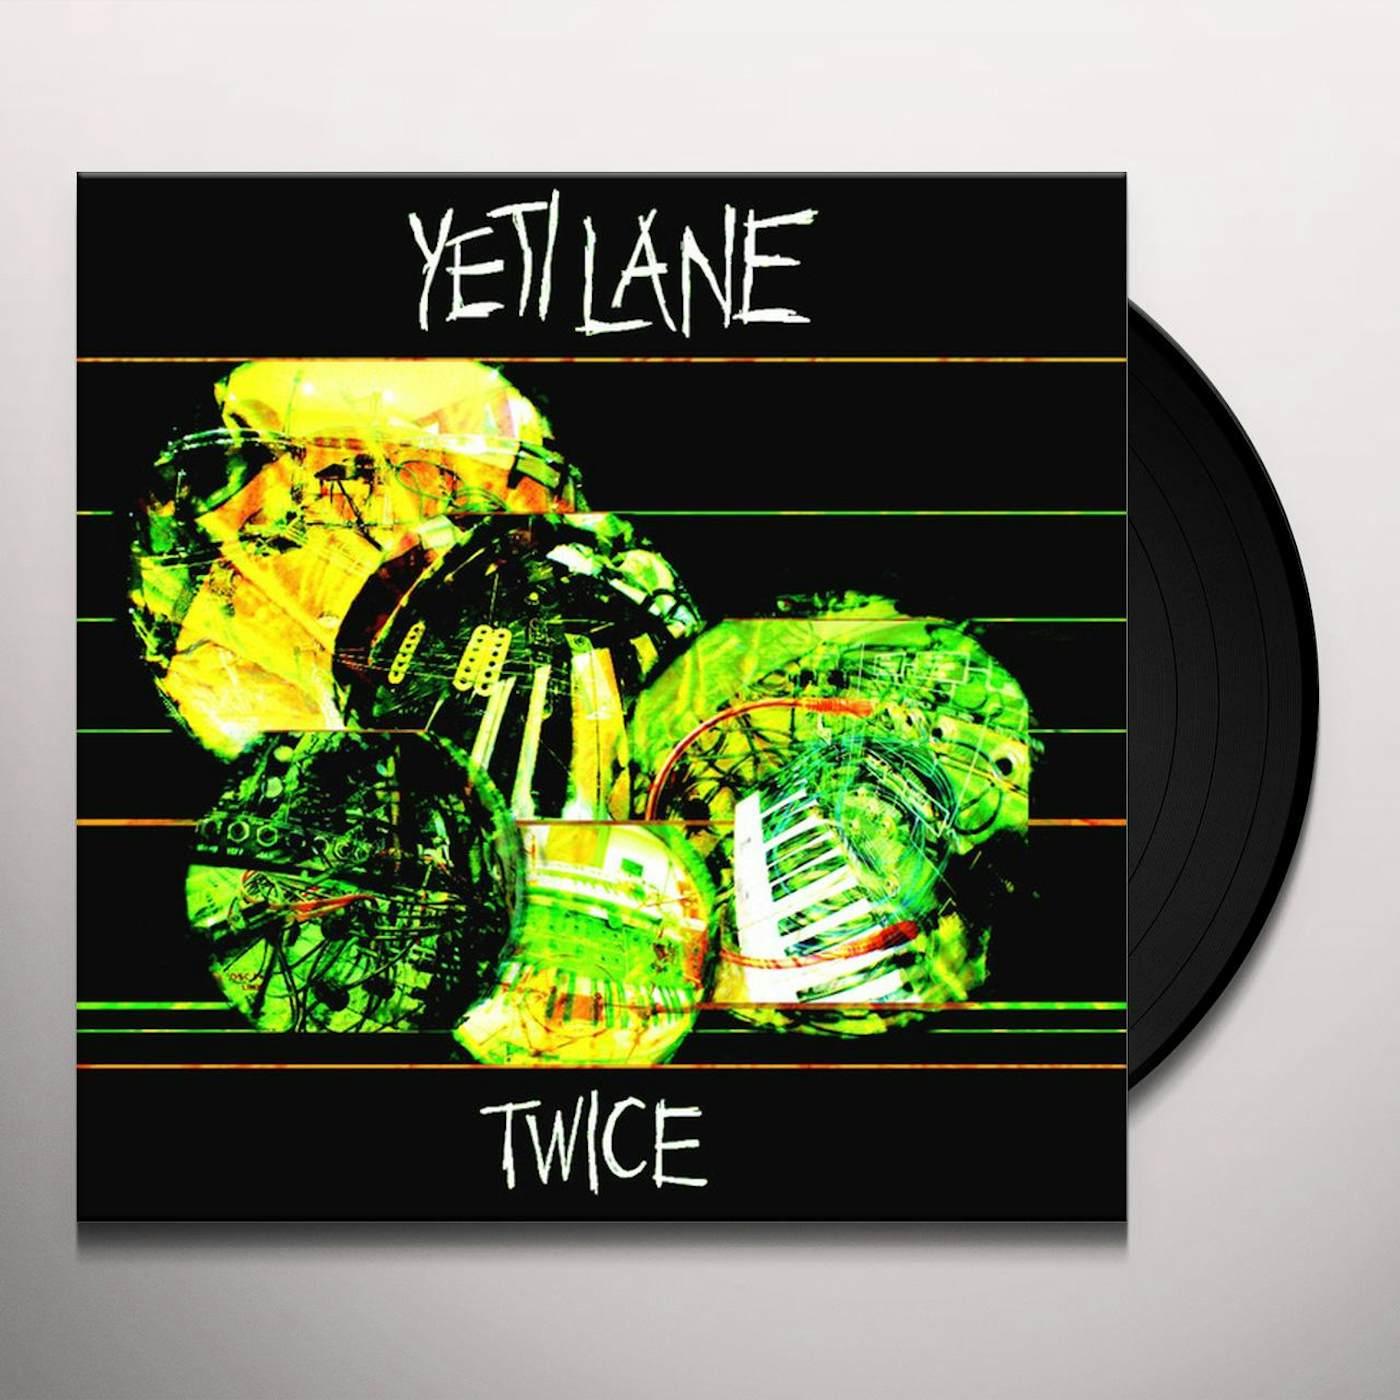 Yeti Lane TWICE EP Vinyl Record